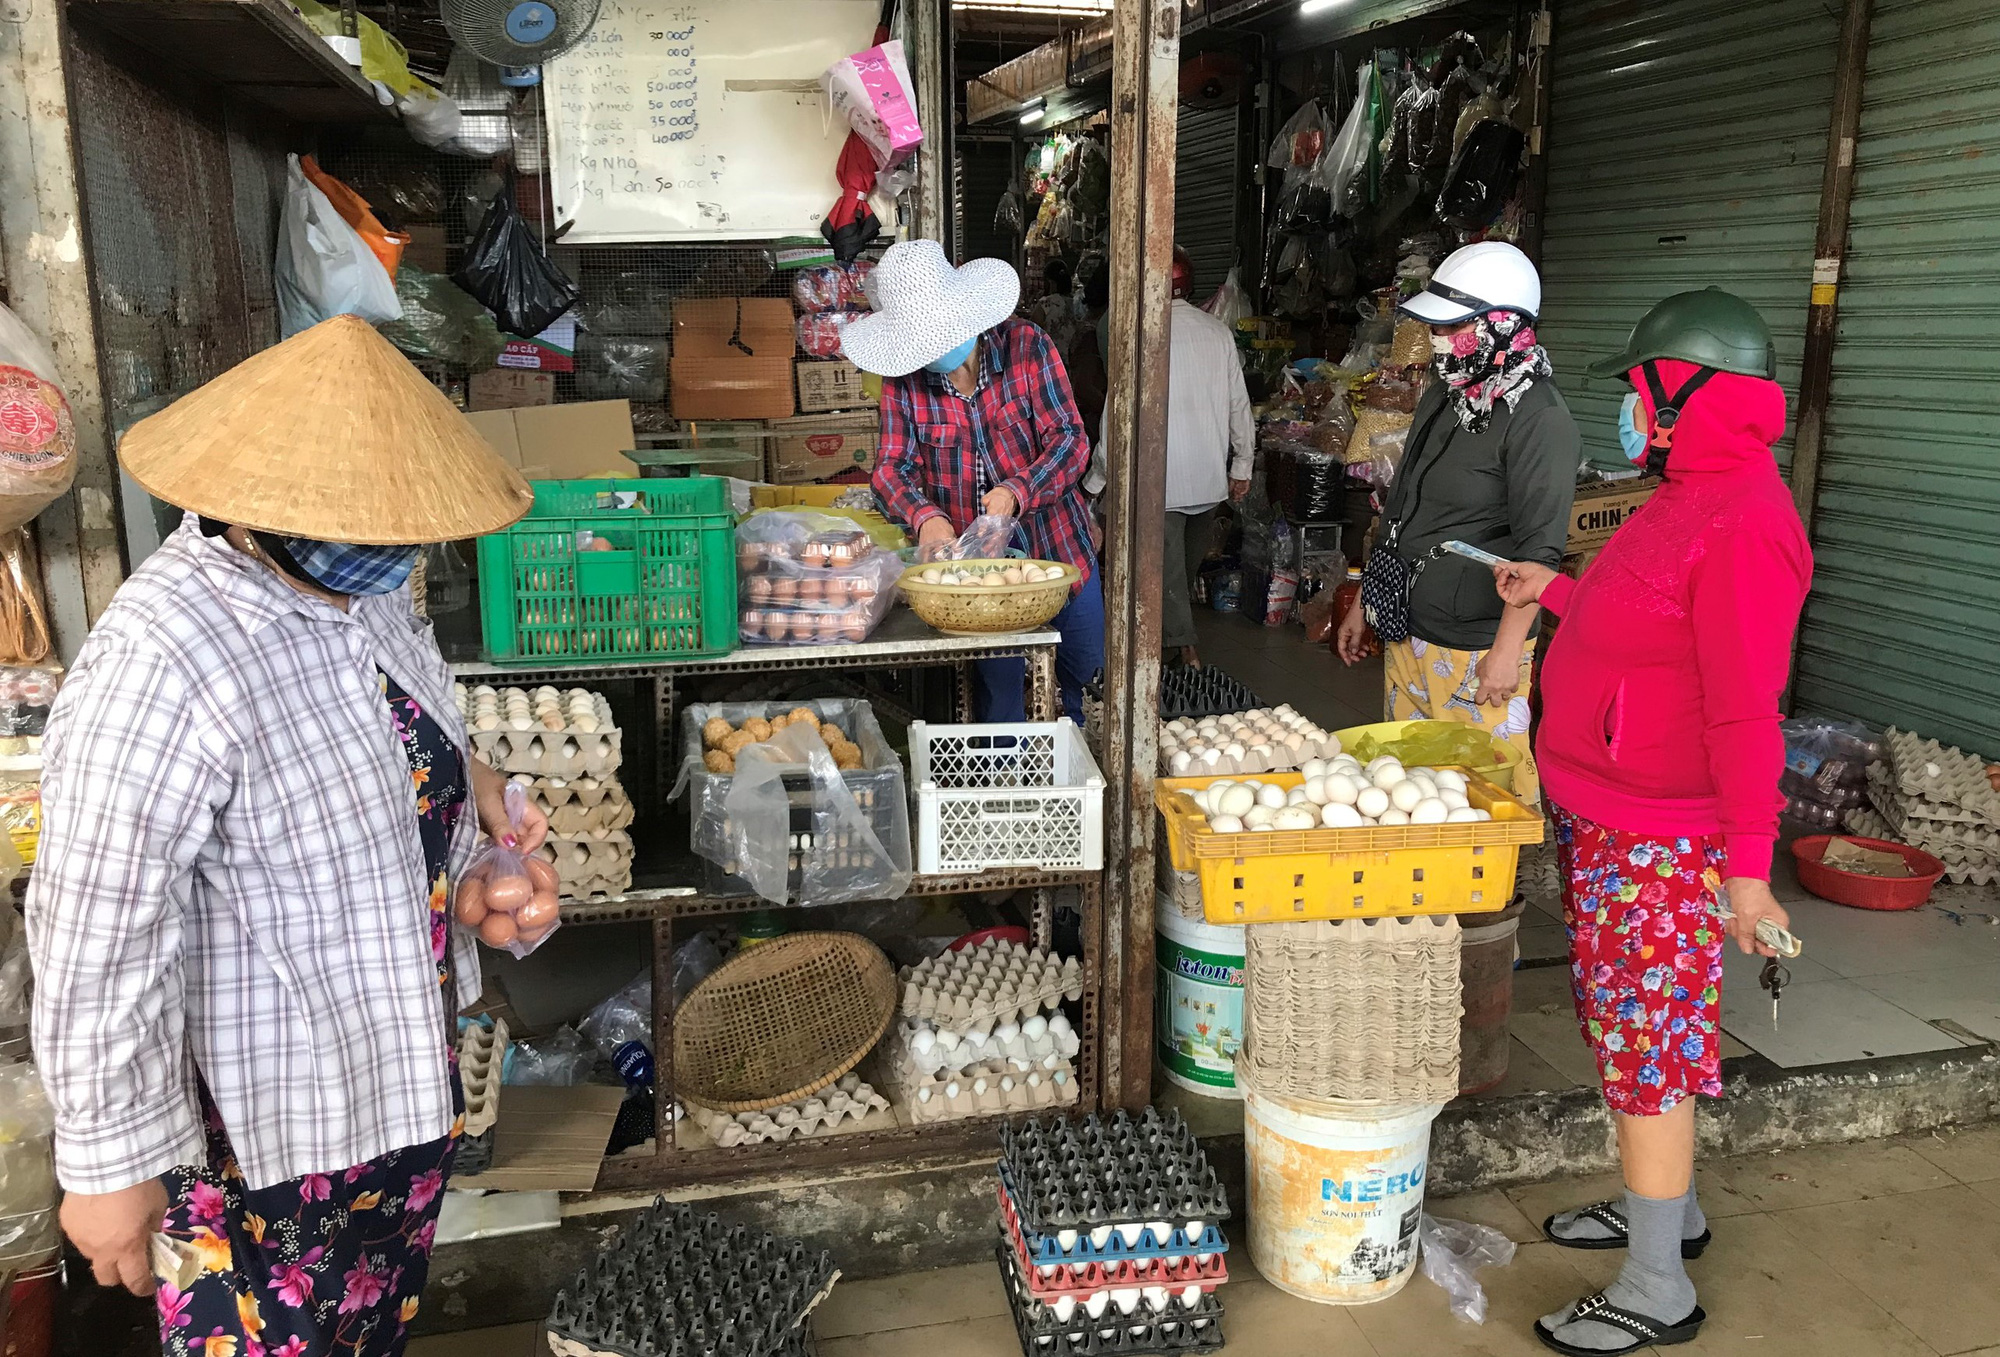 Giá thực phẩm ở Đà Nẵng tăng cao, Ban quản lý chợ xử lý tiểu thương phá giá niêm yết - Ảnh 5.